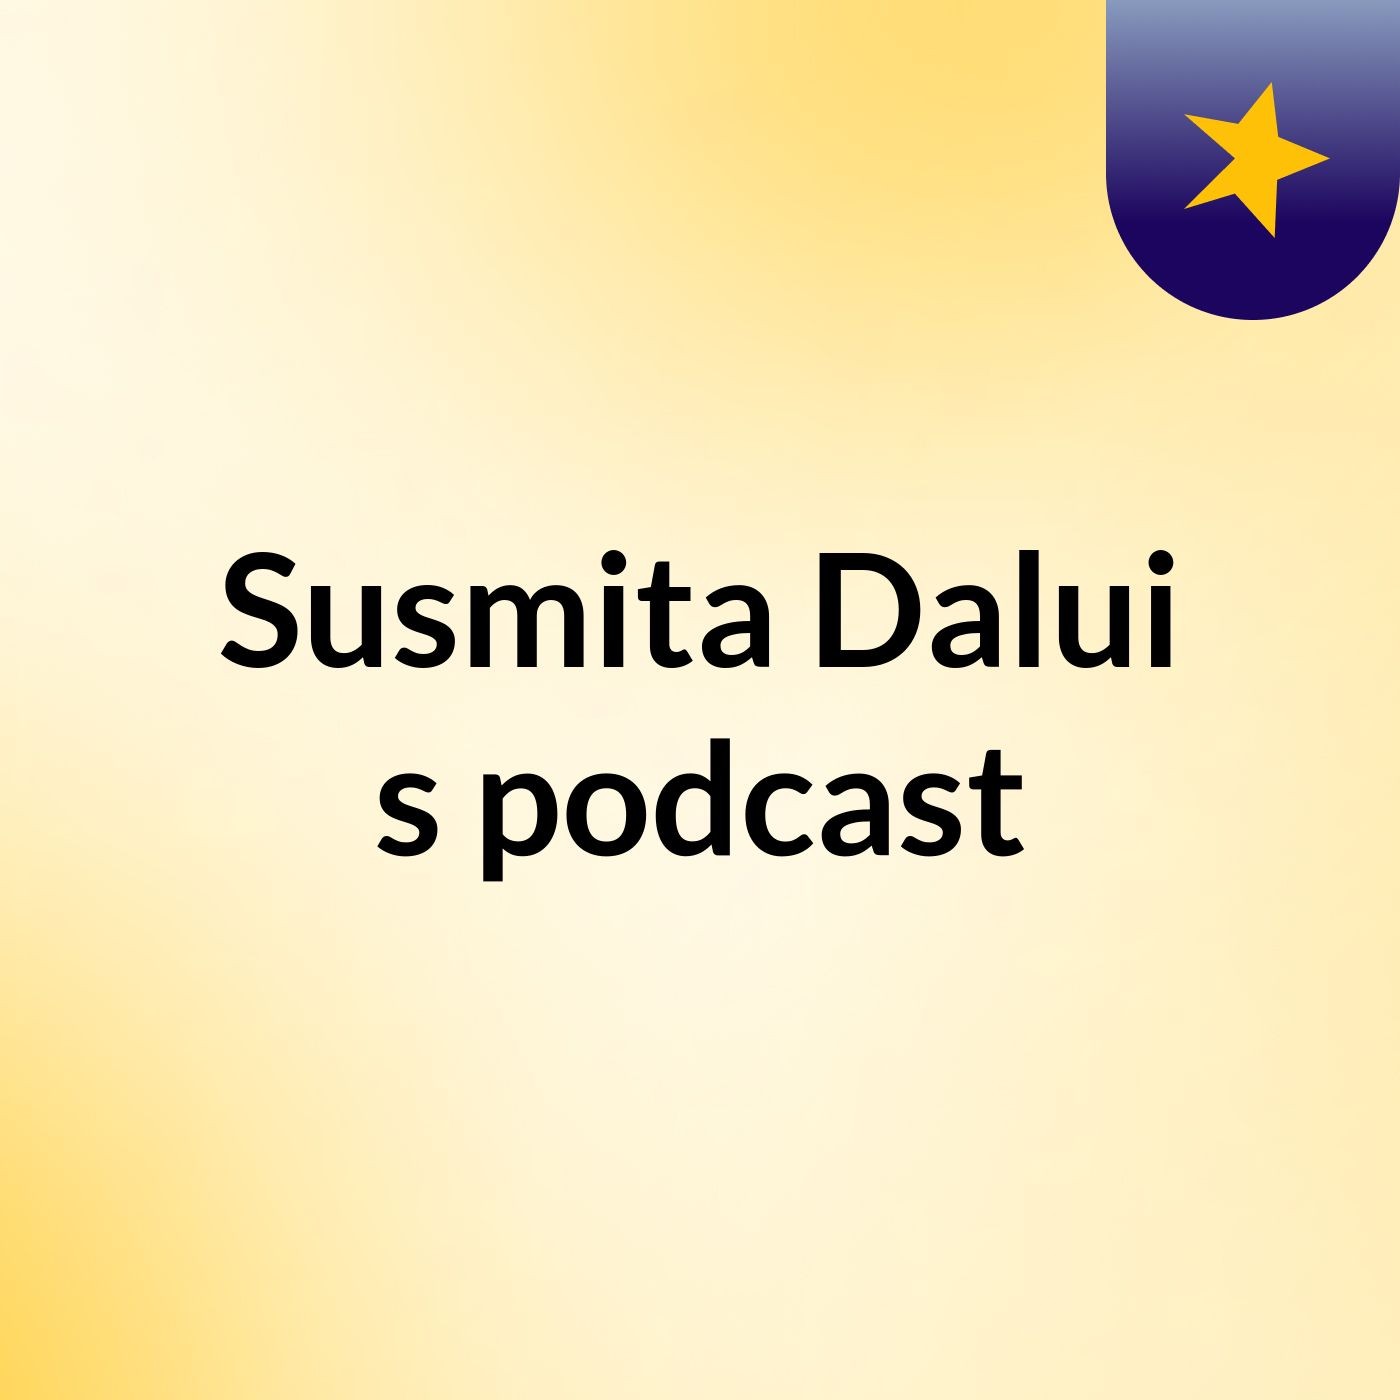 Susmita Dalui's podcast